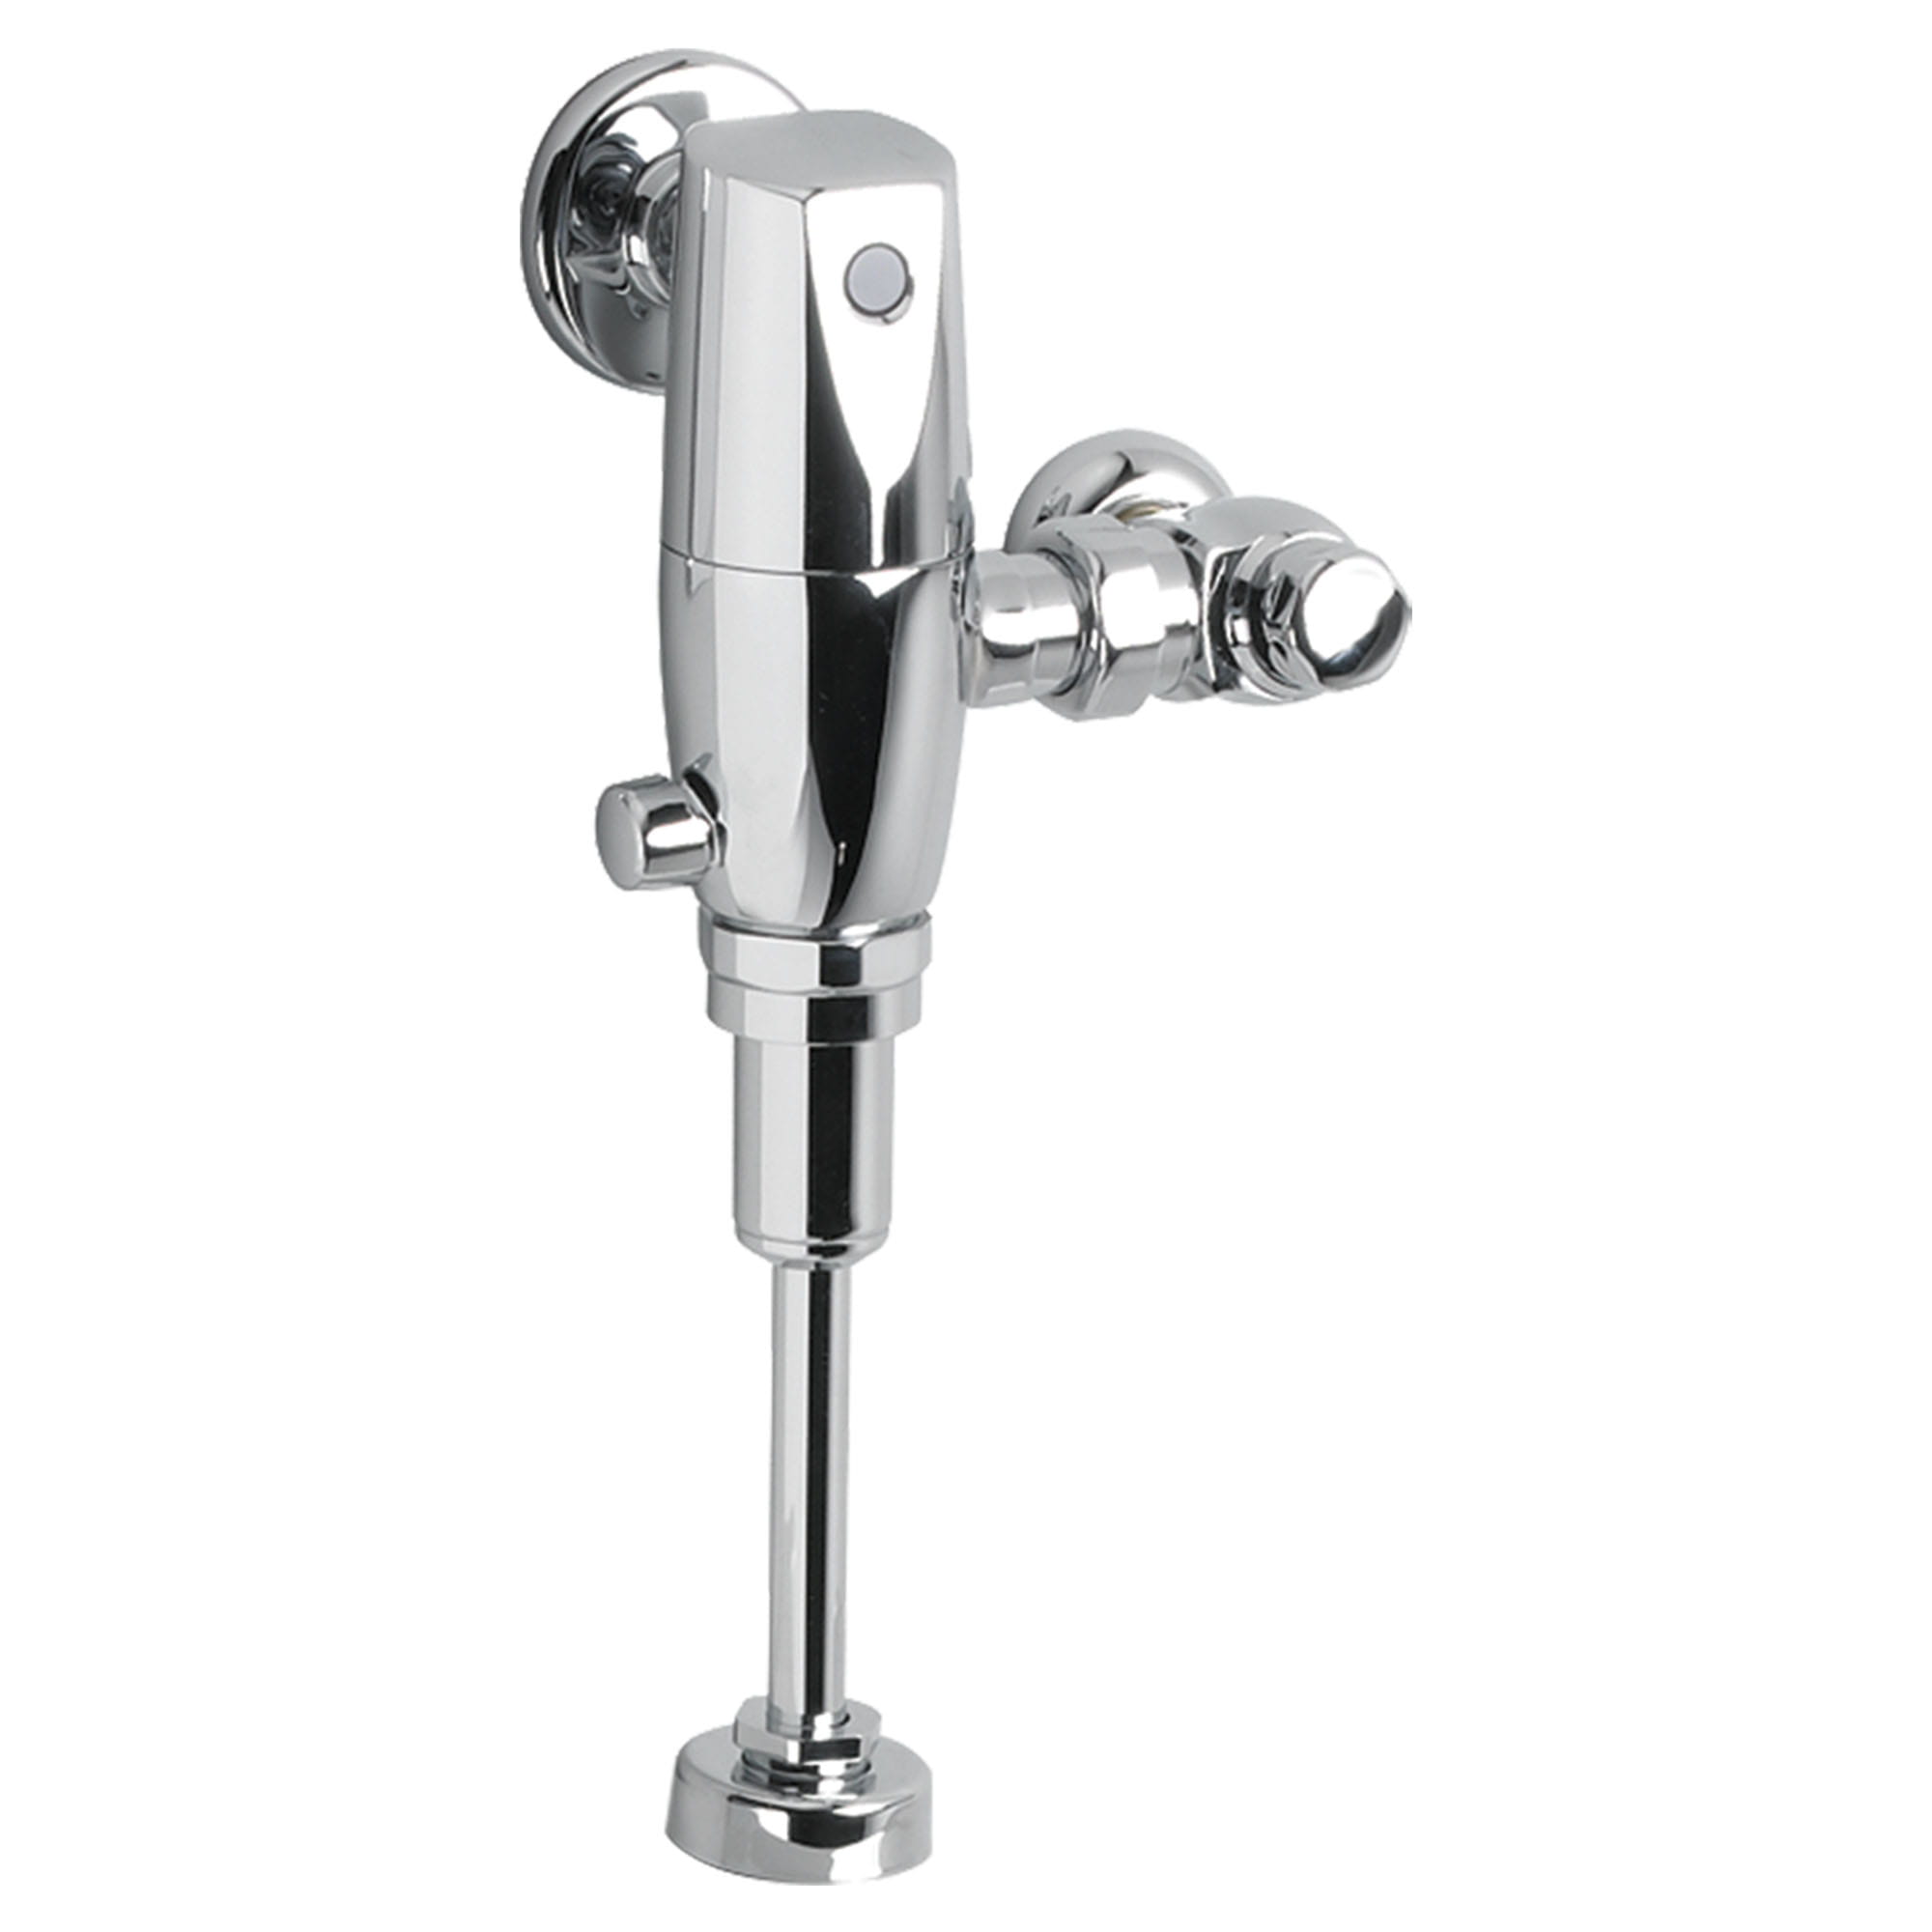 Ultima™ Selectronic - robinet de chasse sans contact pour urinoir, de type à piston, modèle de base, 0,5 gpc/1,9 lpc